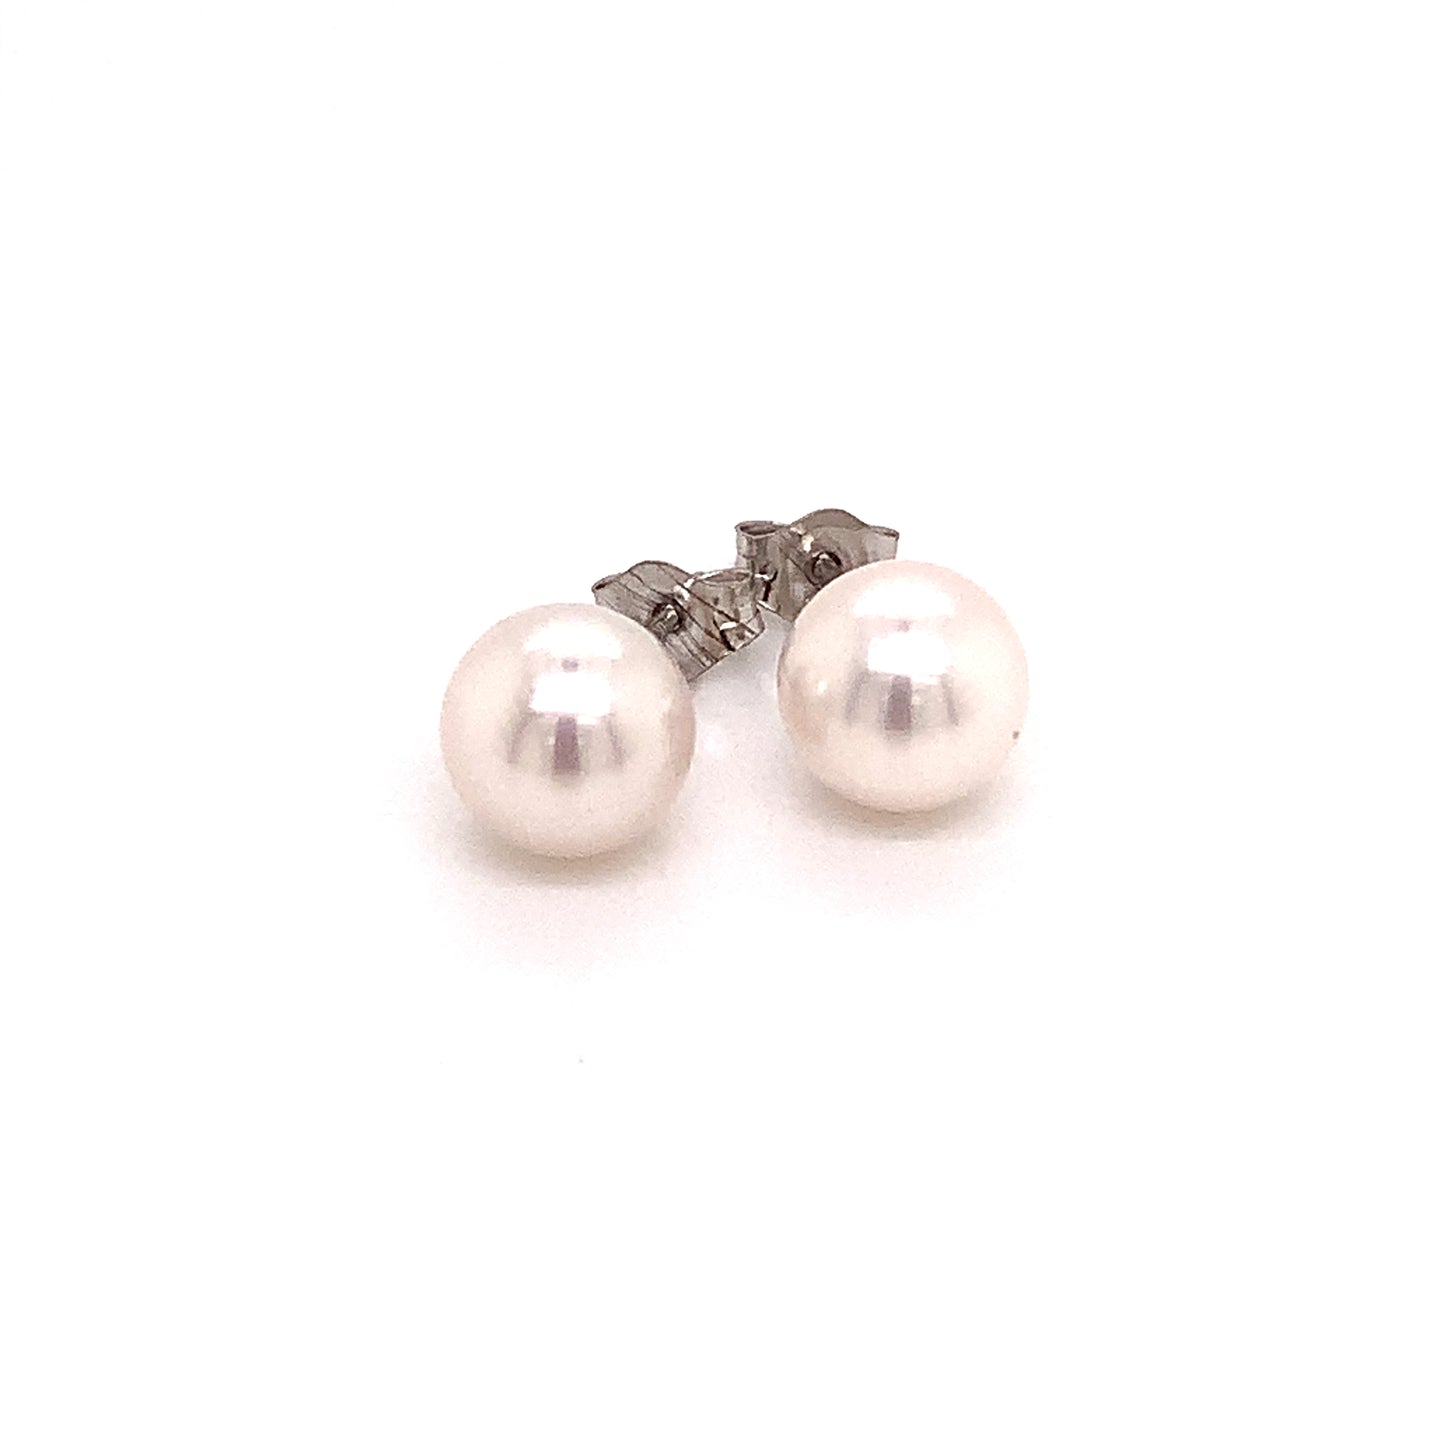 Akoya Pearl Earrings 14k White Gold 7.47 mm Certified $699 015872 - Certified Estate Jewelry